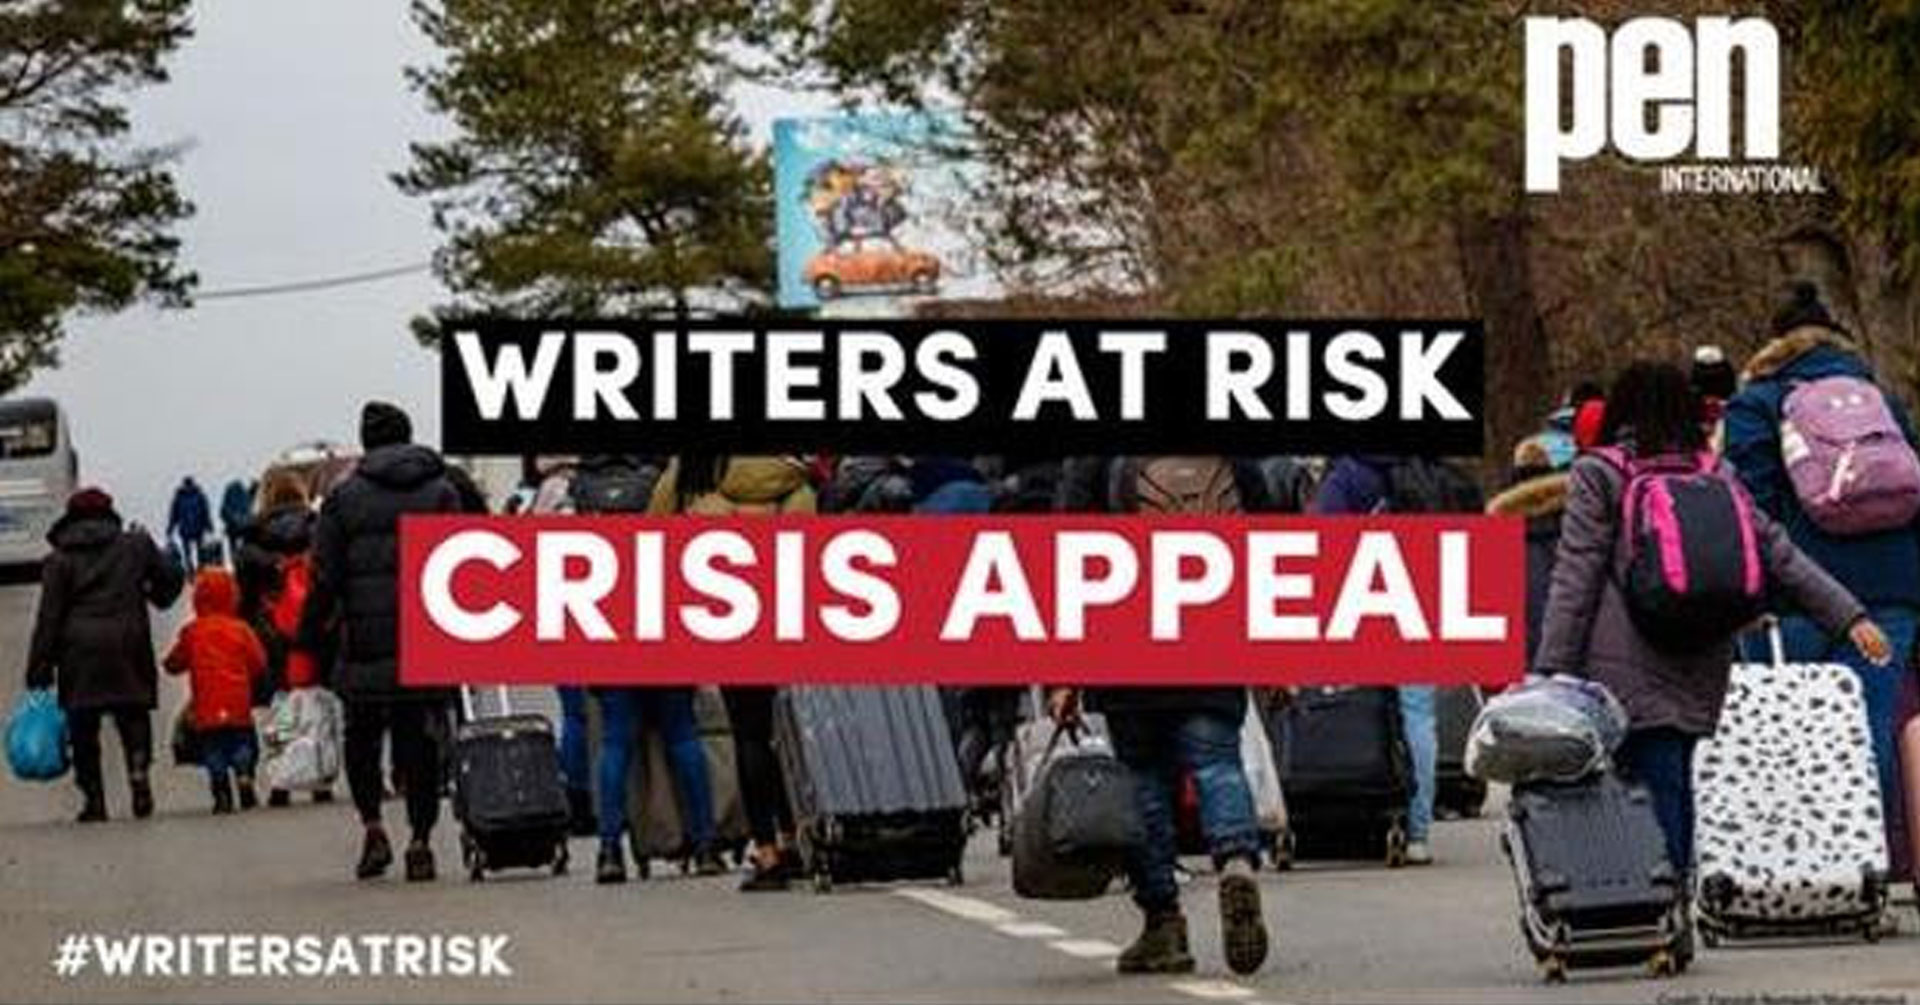 Έκκληση του PEN International για τους συγγραφείς που κινδυνεύουν λόγω της κρίσης